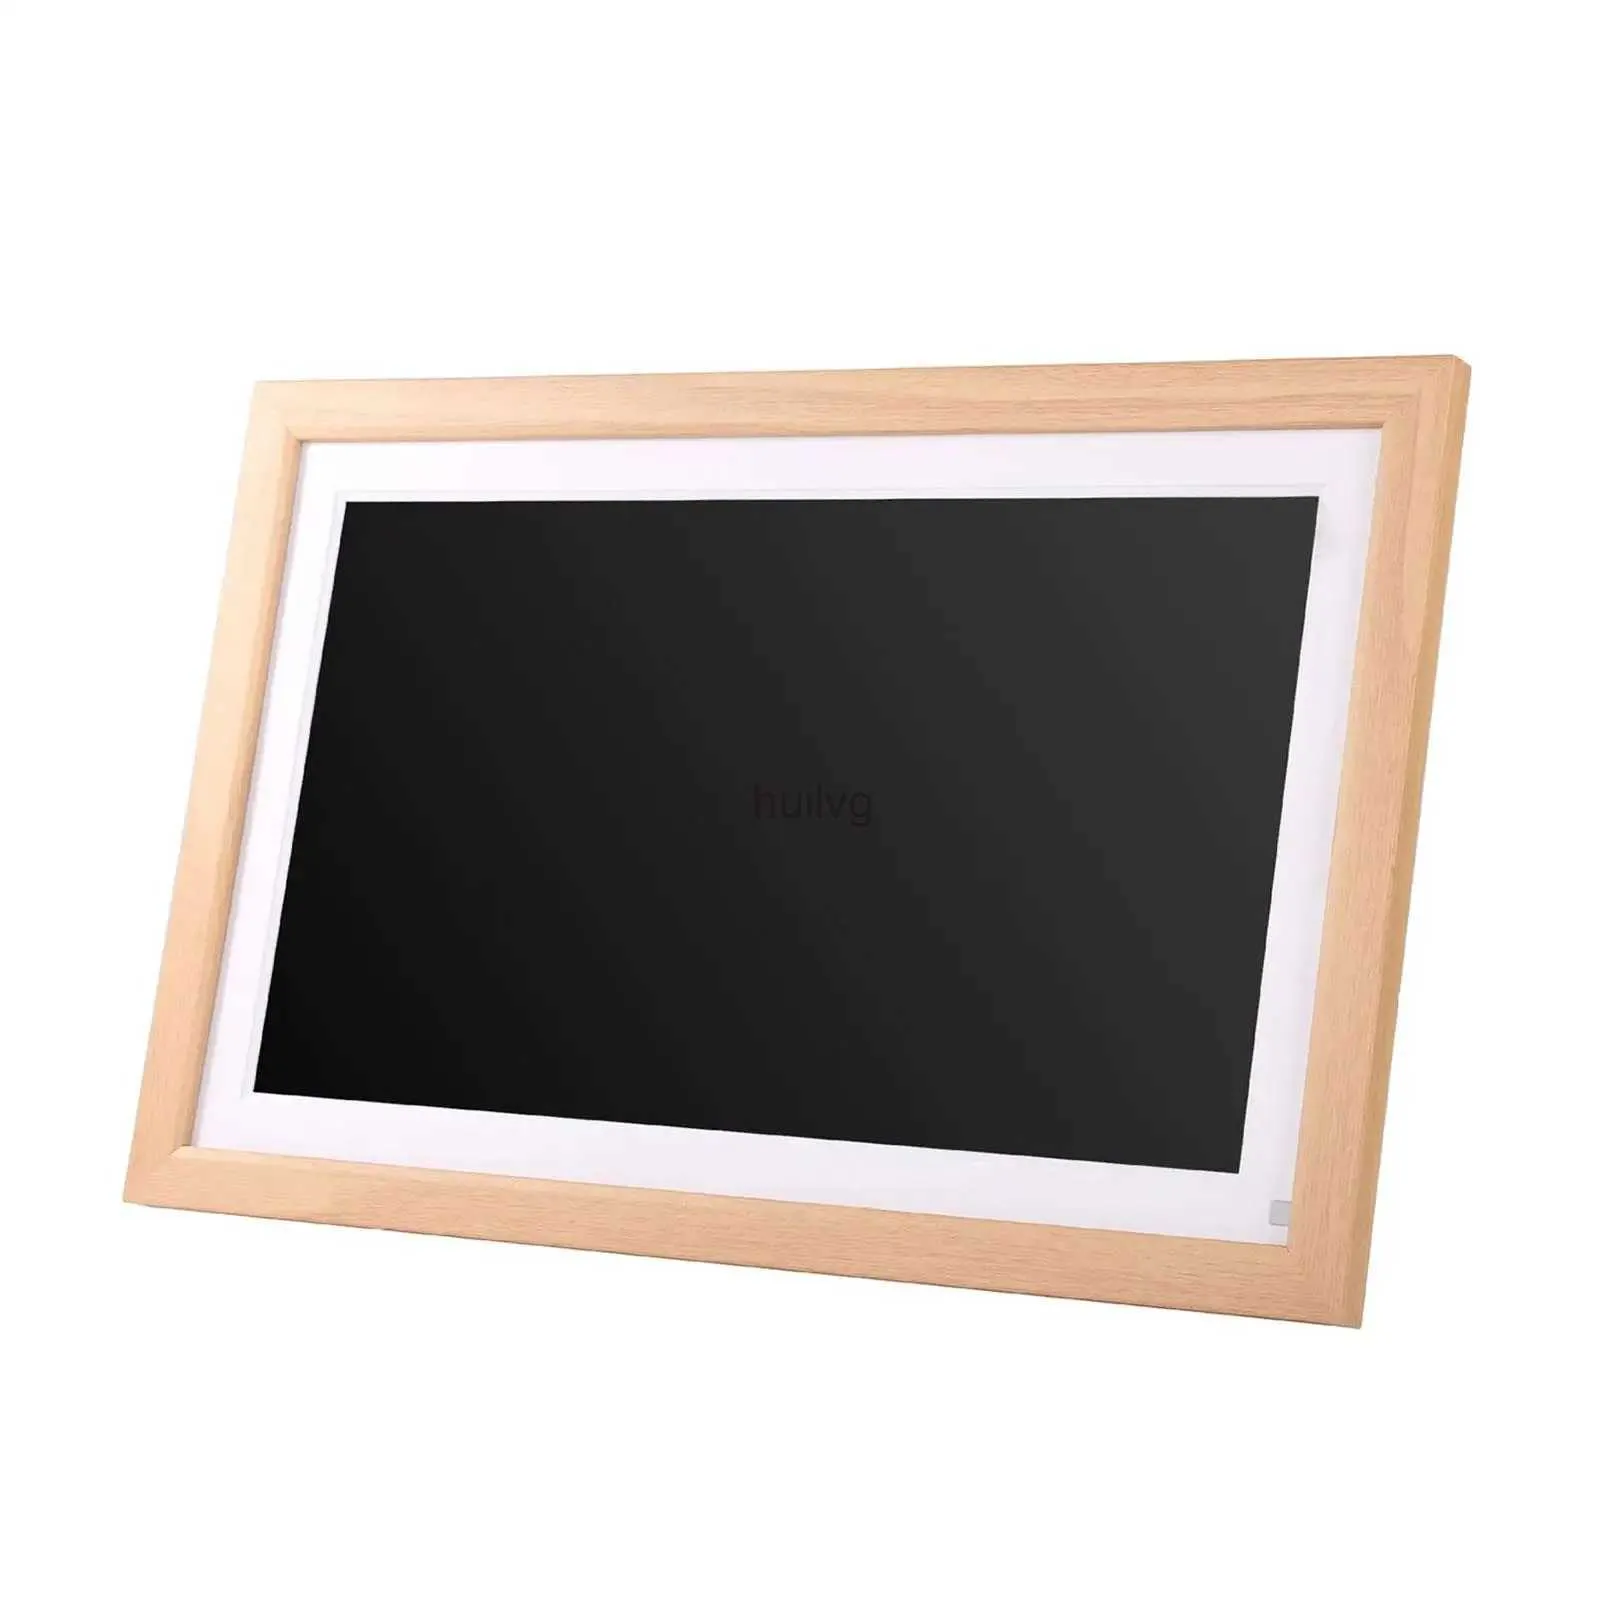 Цифровые фото -рамки 1920x1080 IPS сенсорный экран цифровой фотомамбам для хранения зарядного устройства US Leasy Setup 15,6 дюйма цифровой картинки для домашнего декора 24329